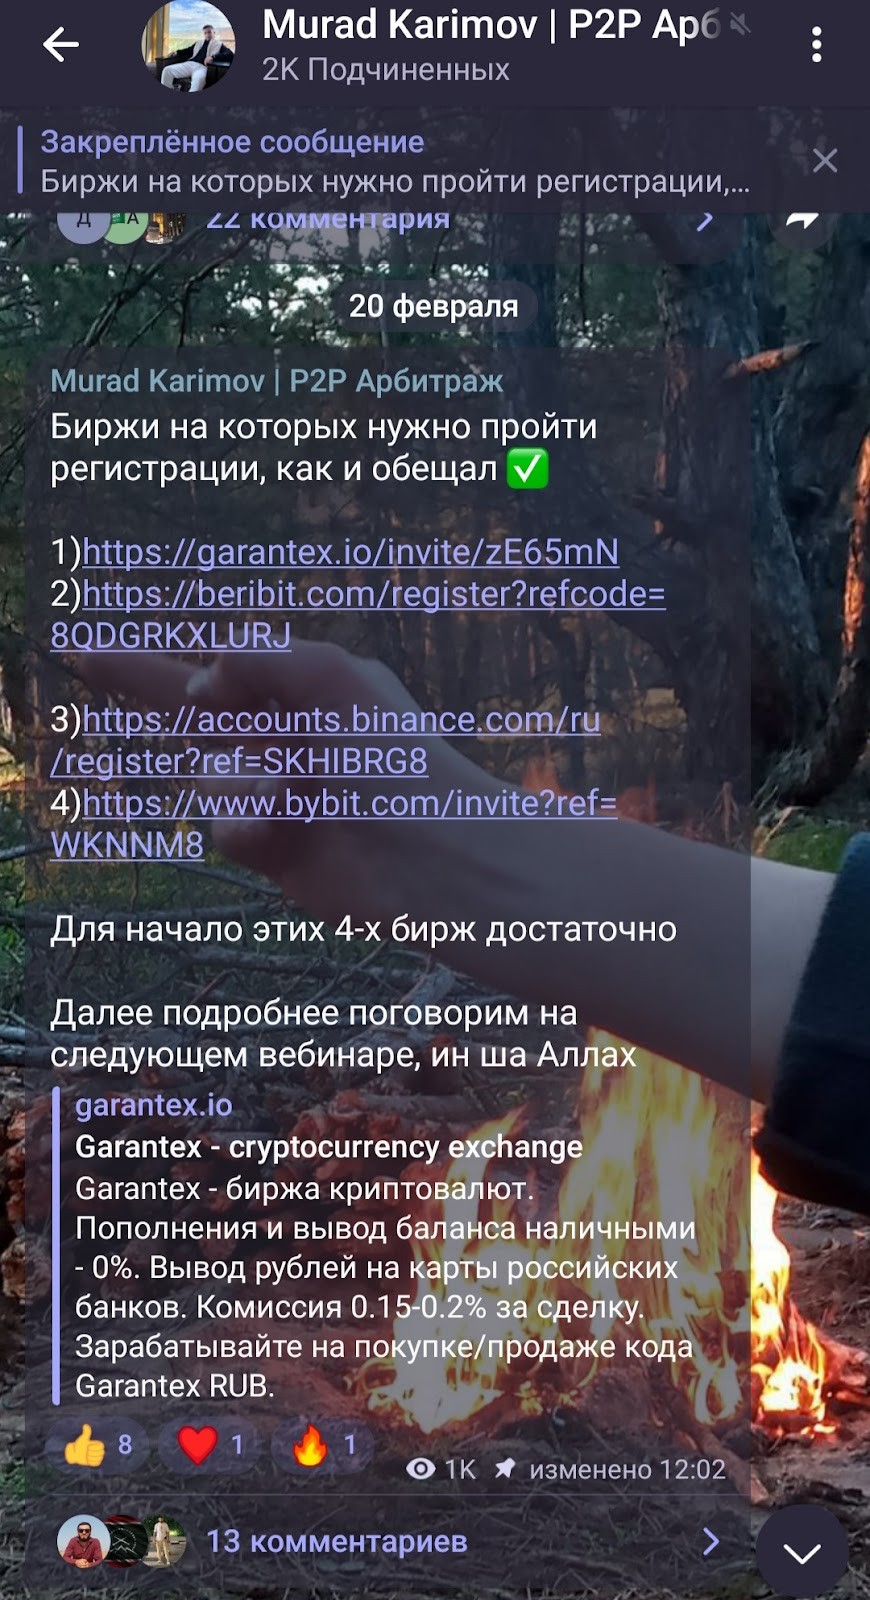 Обзор канала Мурад Каримов